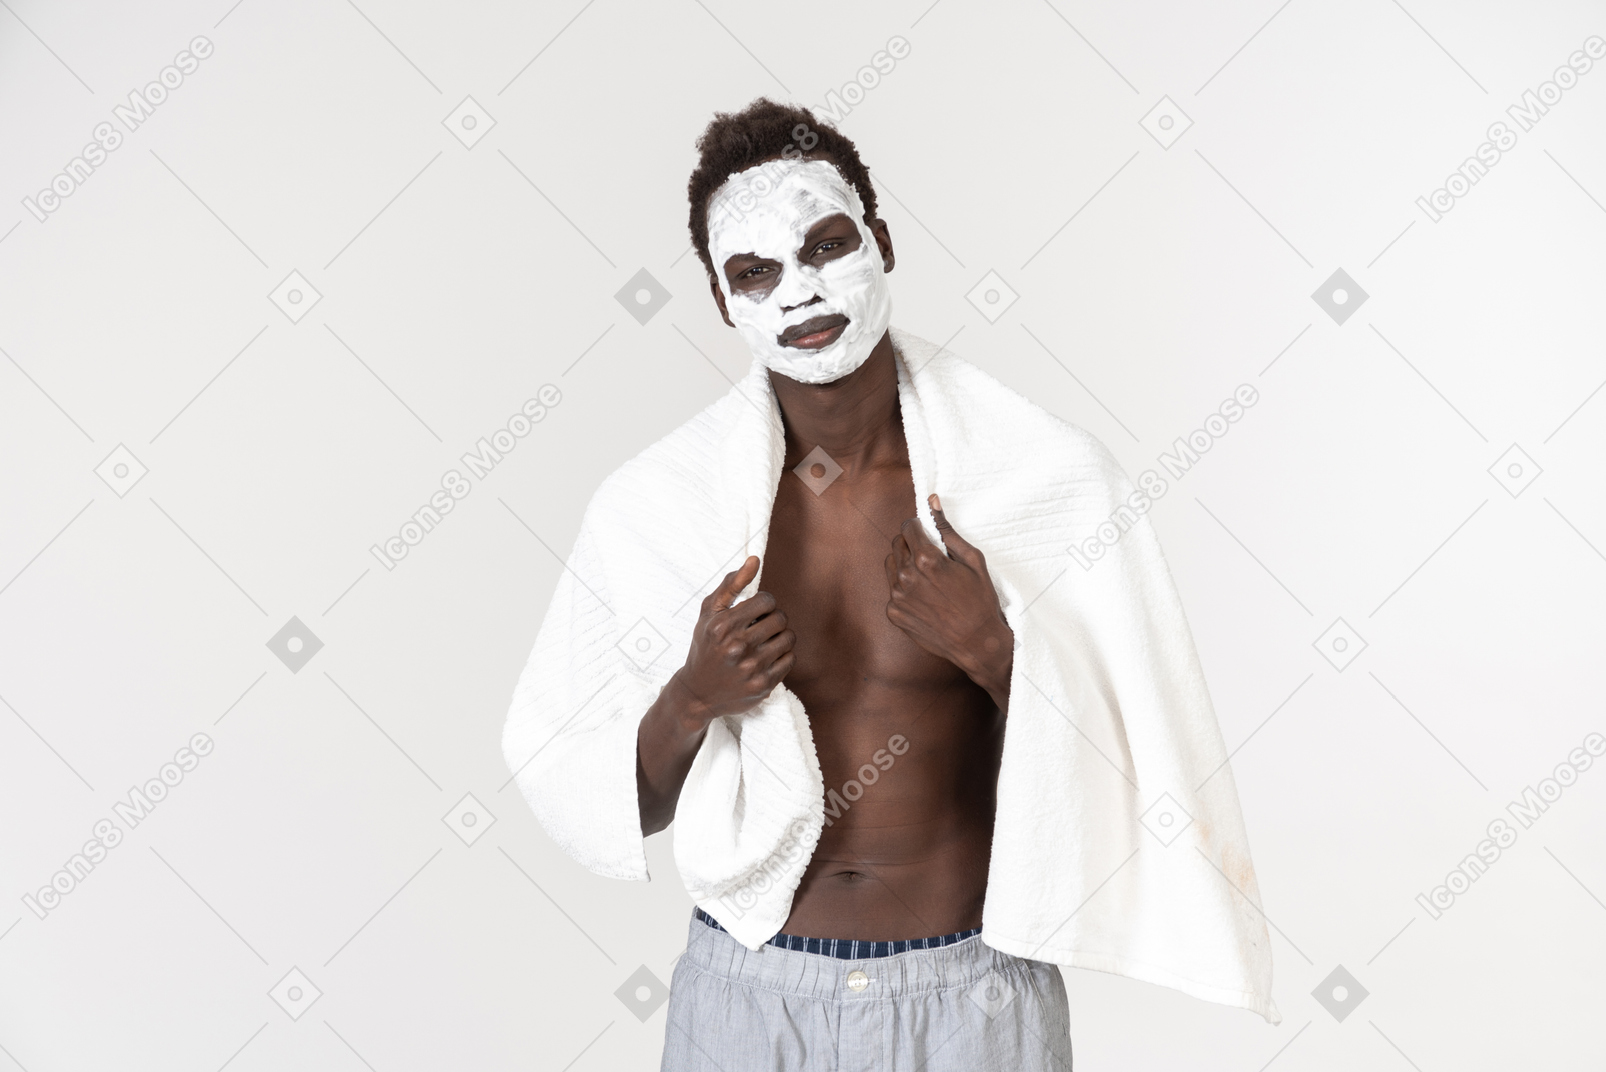 허리에 흰 목욕 타월을 두르고 어깨에 또 하나를 들고 피부 관리 루틴을 진행하는 젊은 흑인 남자